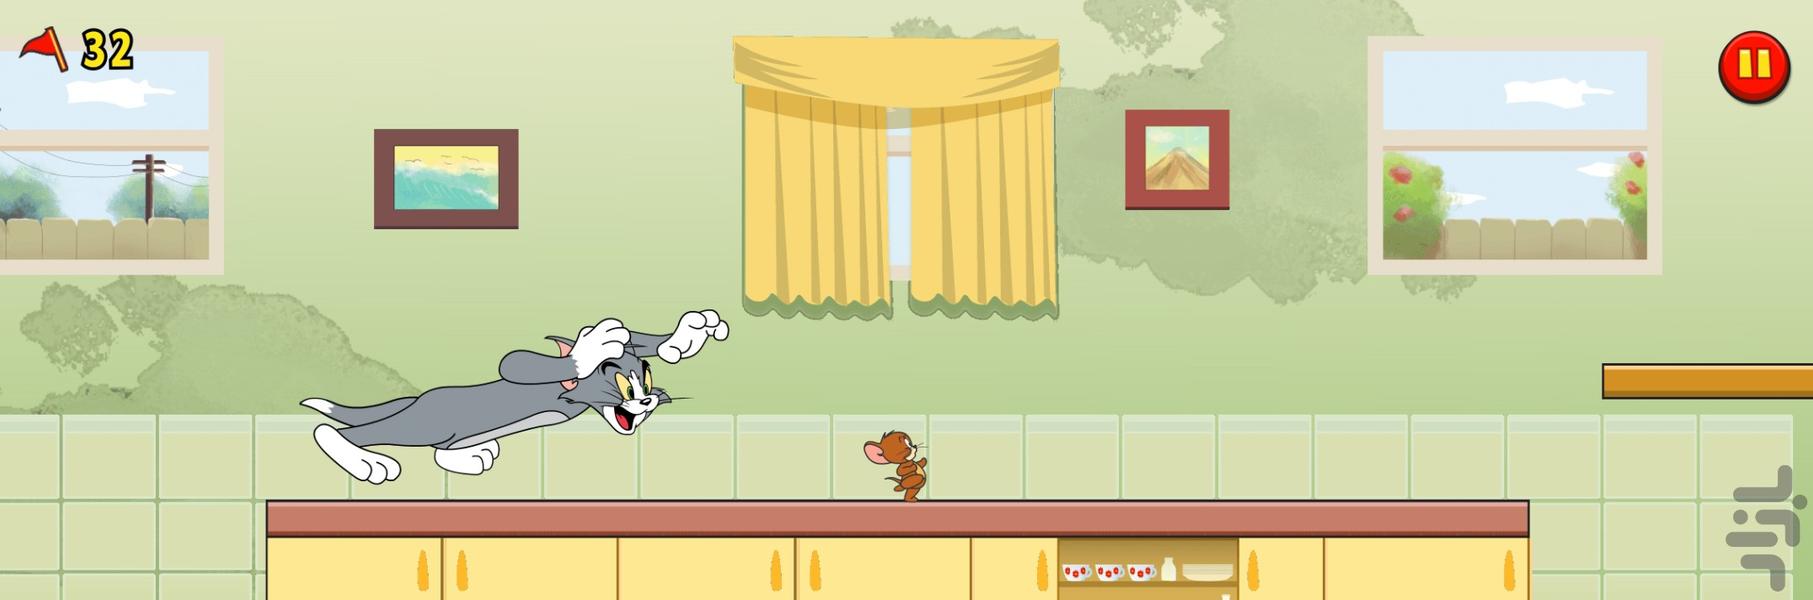 بازی موش و گربه امتیازی - Gameplay image of android game